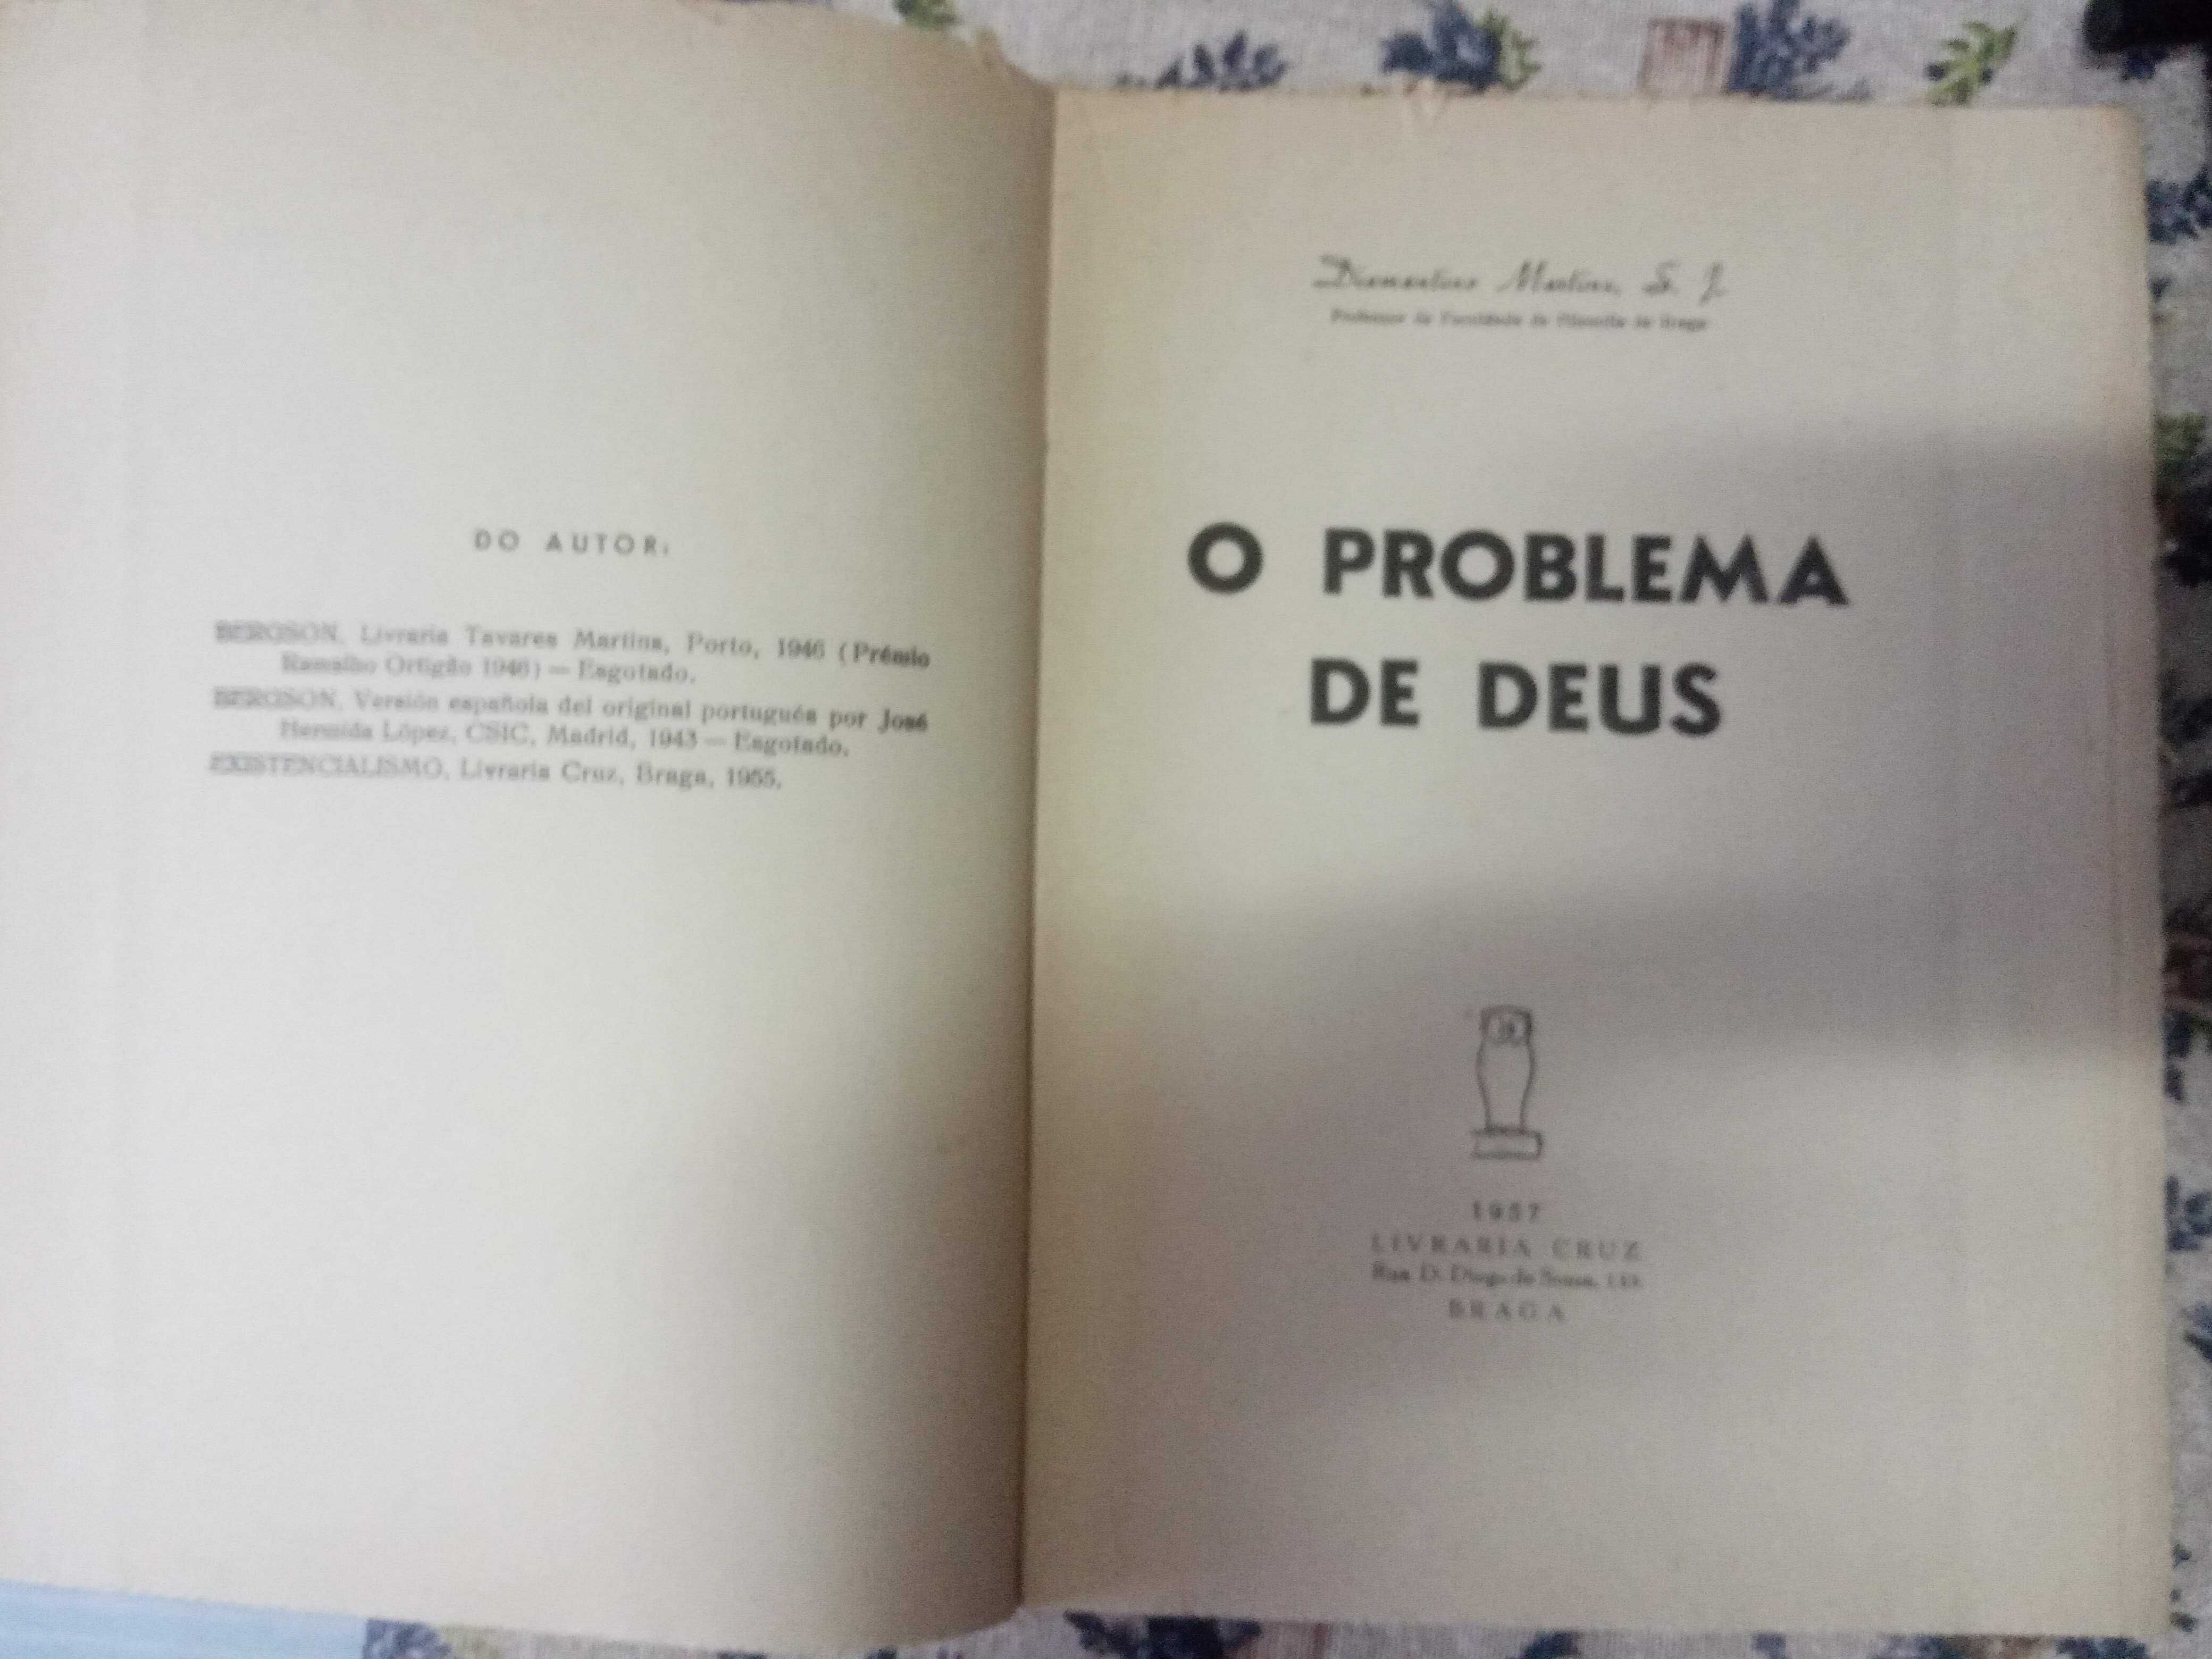 O Problema de Deus - Diamantino Martins 1957